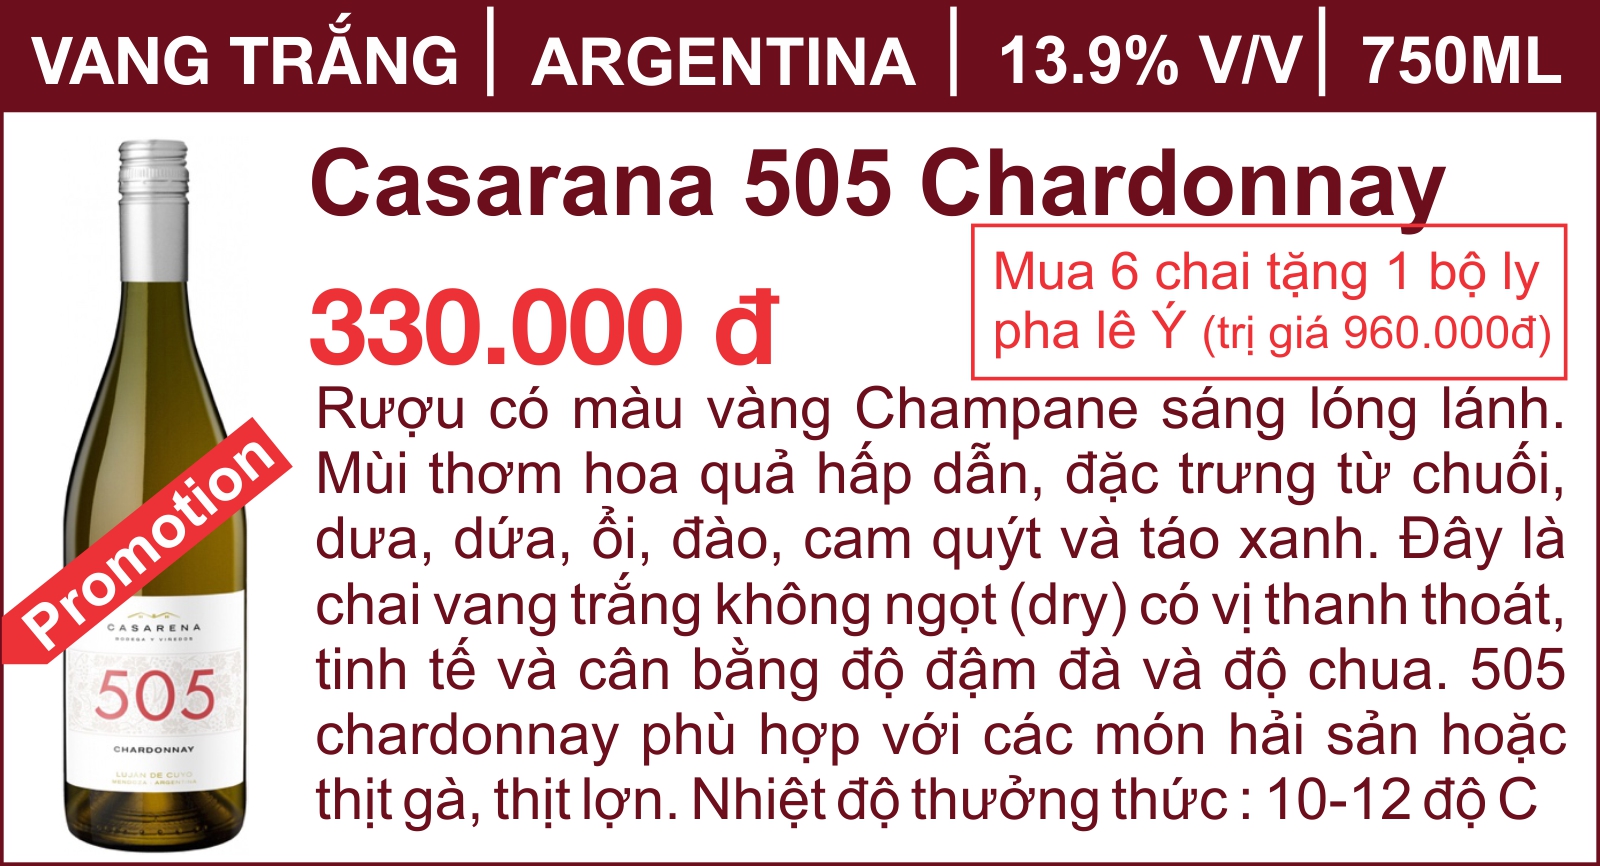 Casarana 505 Chardonnay